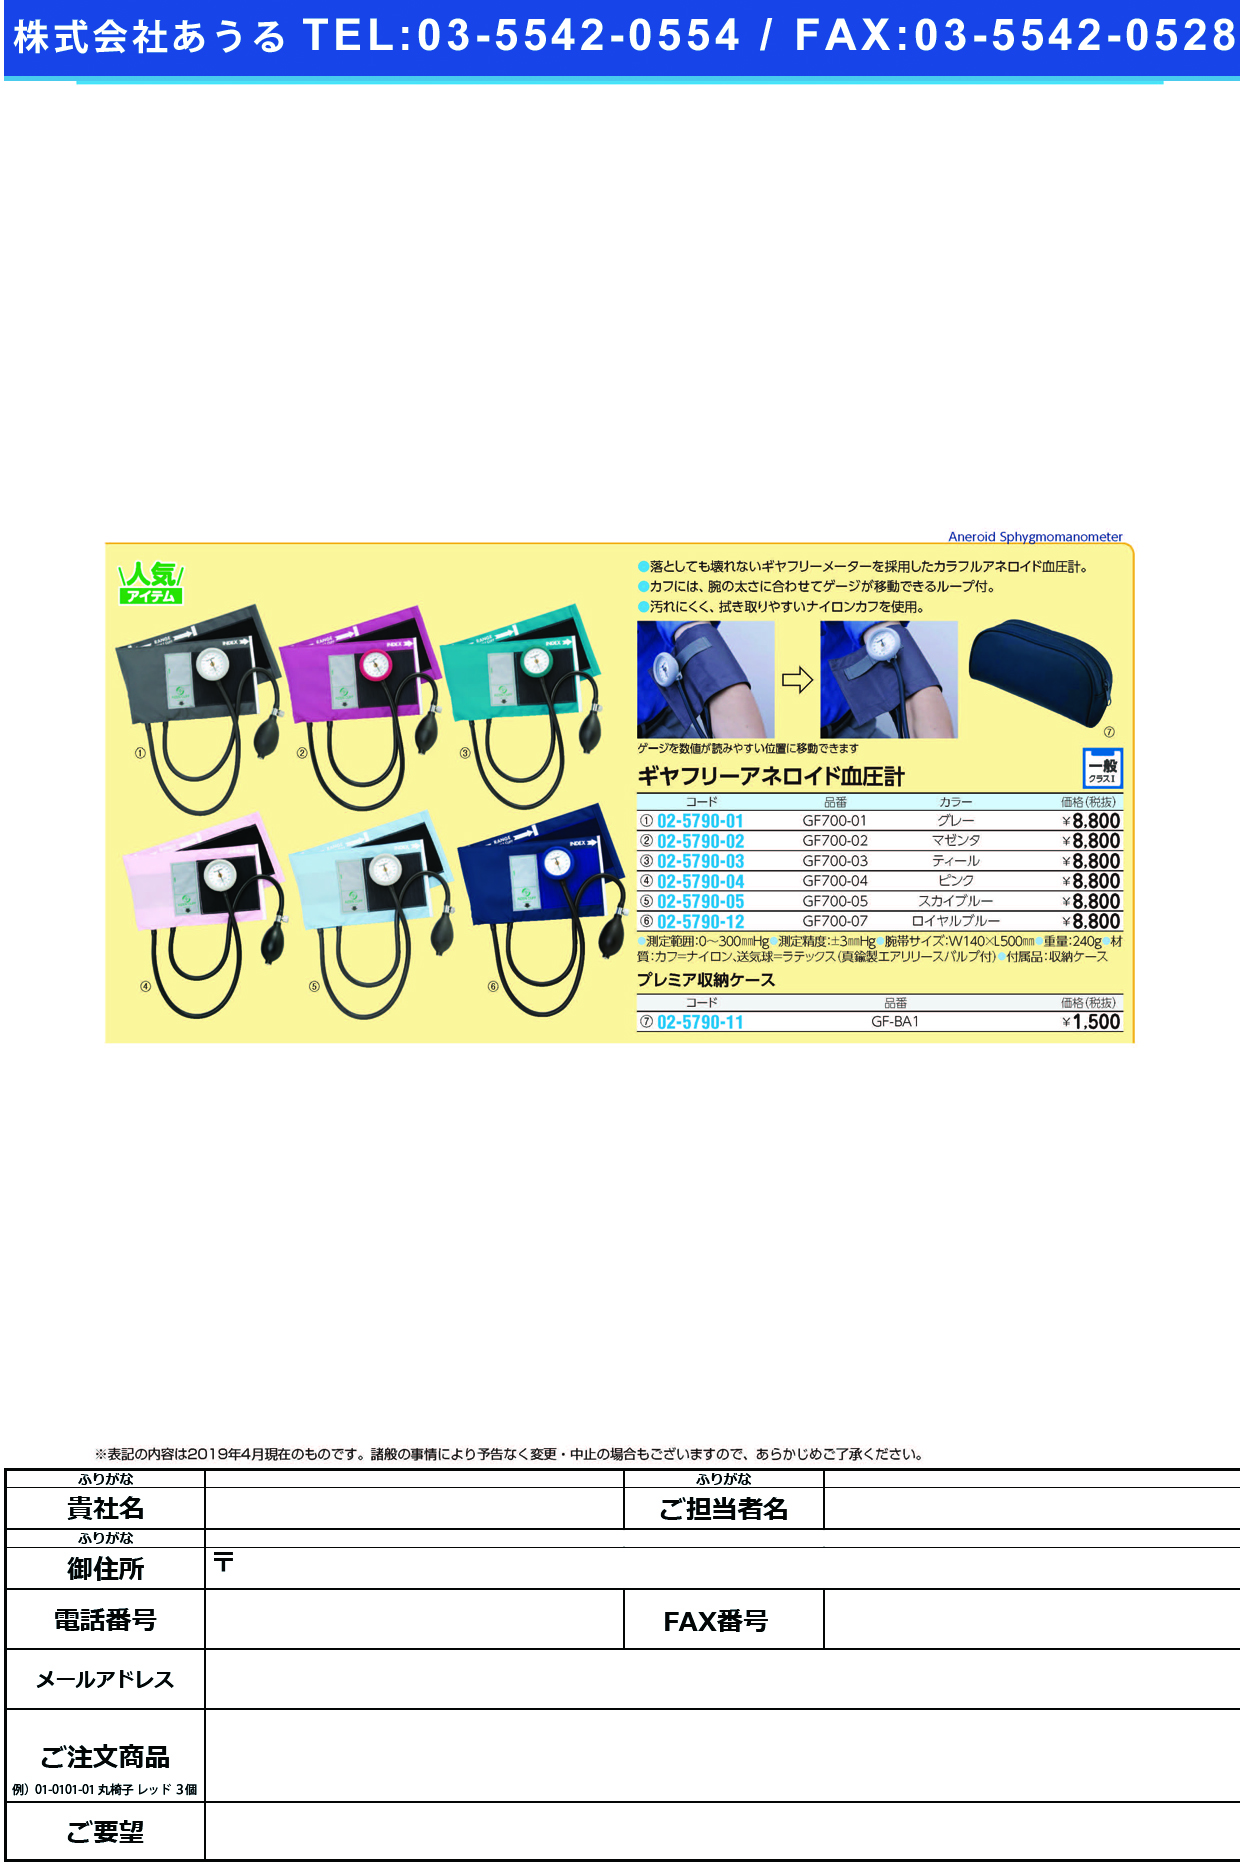 (02-5790-01)ギヤフリーアネロイド血圧計 GF700-01(ｸﾞﾚｰ) ｷﾞﾔﾌﾘｰｱﾈﾛｲﾄﾞｹﾂｱﾂｹｲ【1組単位】【2019年カタログ商品】